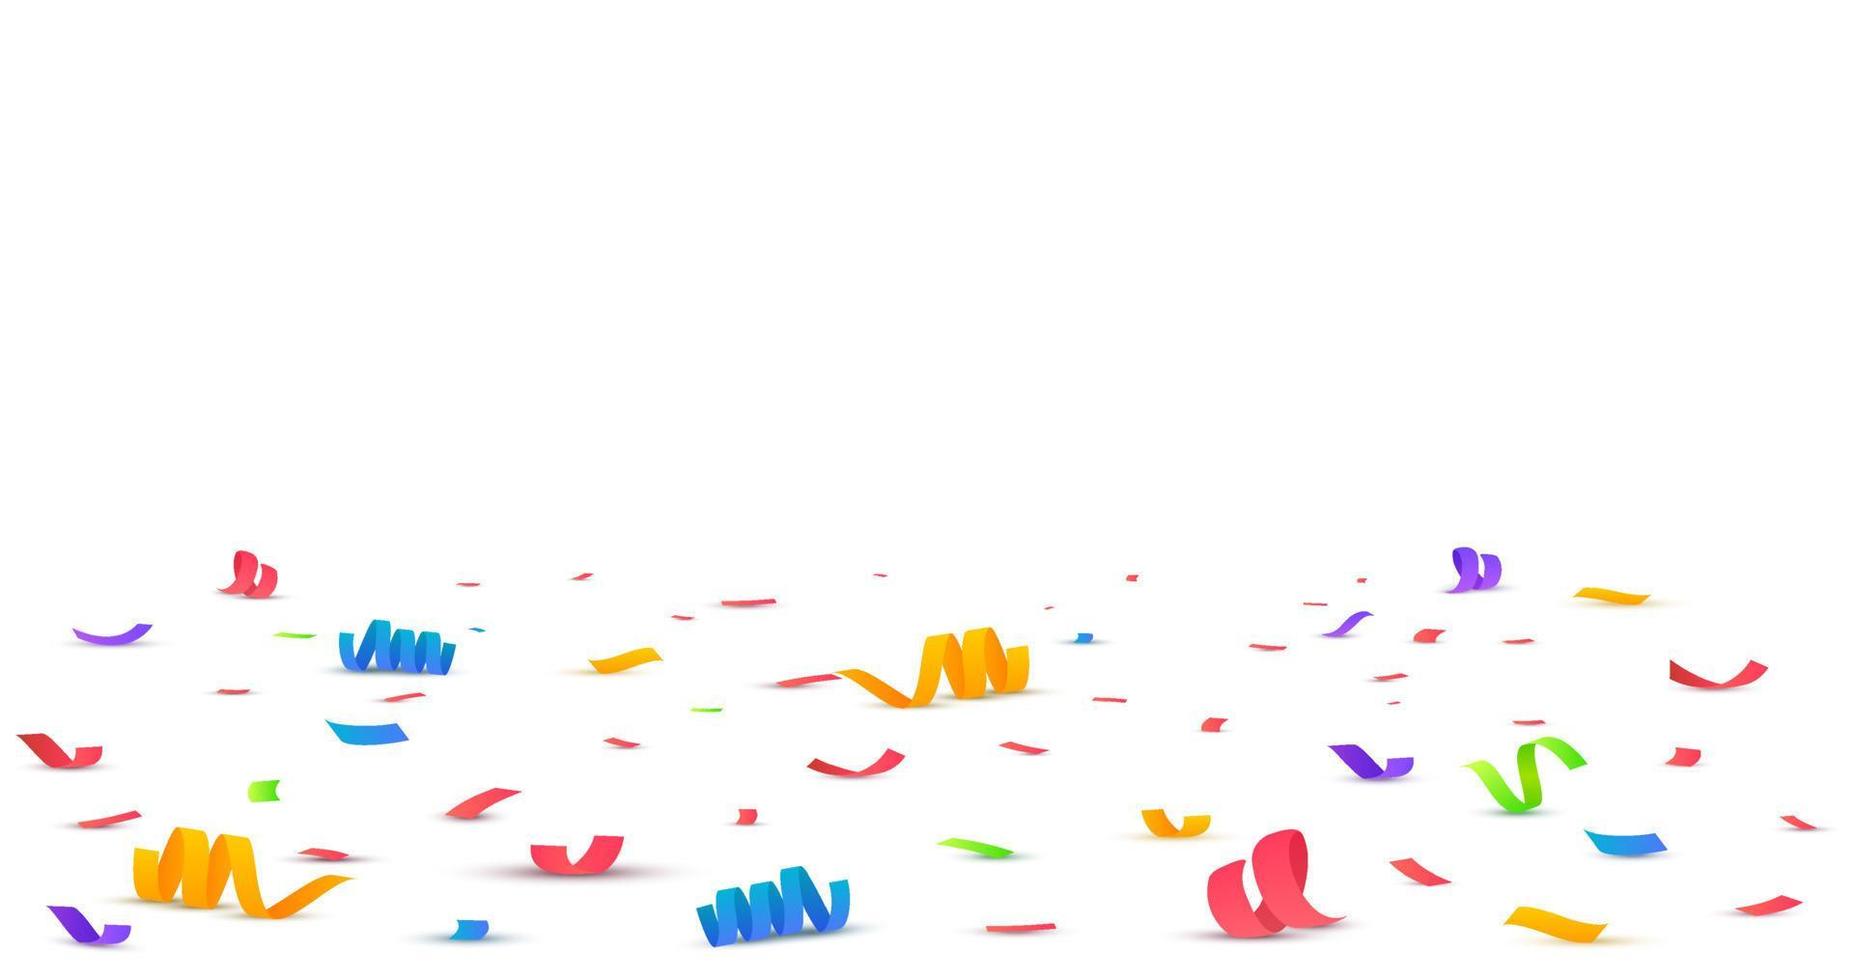 Confetti background. Falling confetti, birthday vector illustration